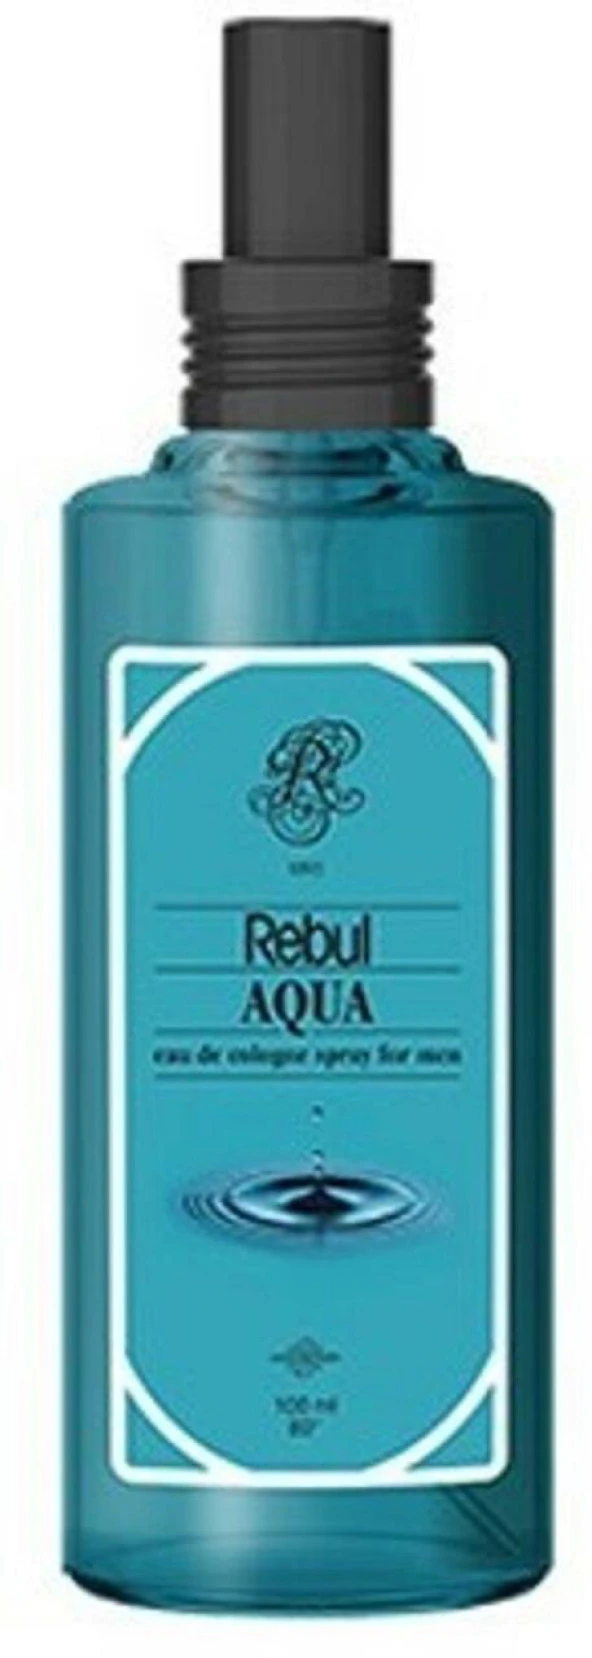 Rebul 100 ml Sprey Kolonya  - kutusuz Aqua